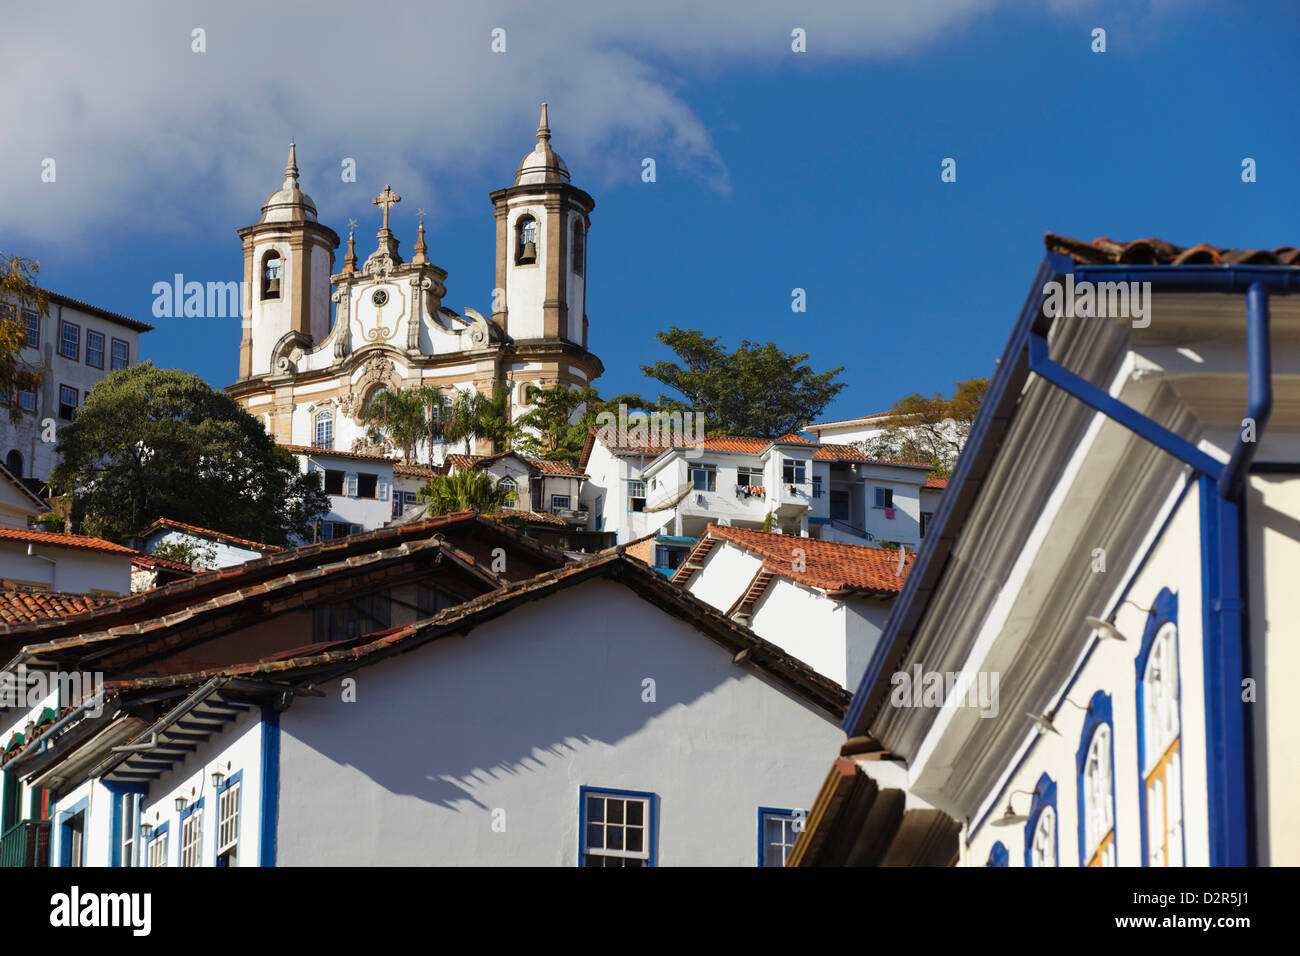 Vue de bâtiments coloniaux et église de Nossa Senhora do Carmo (Notre-Dame du Mont Carmel) Église, Ouro Preto, Minas Gerais, Brésil Banque D'Images